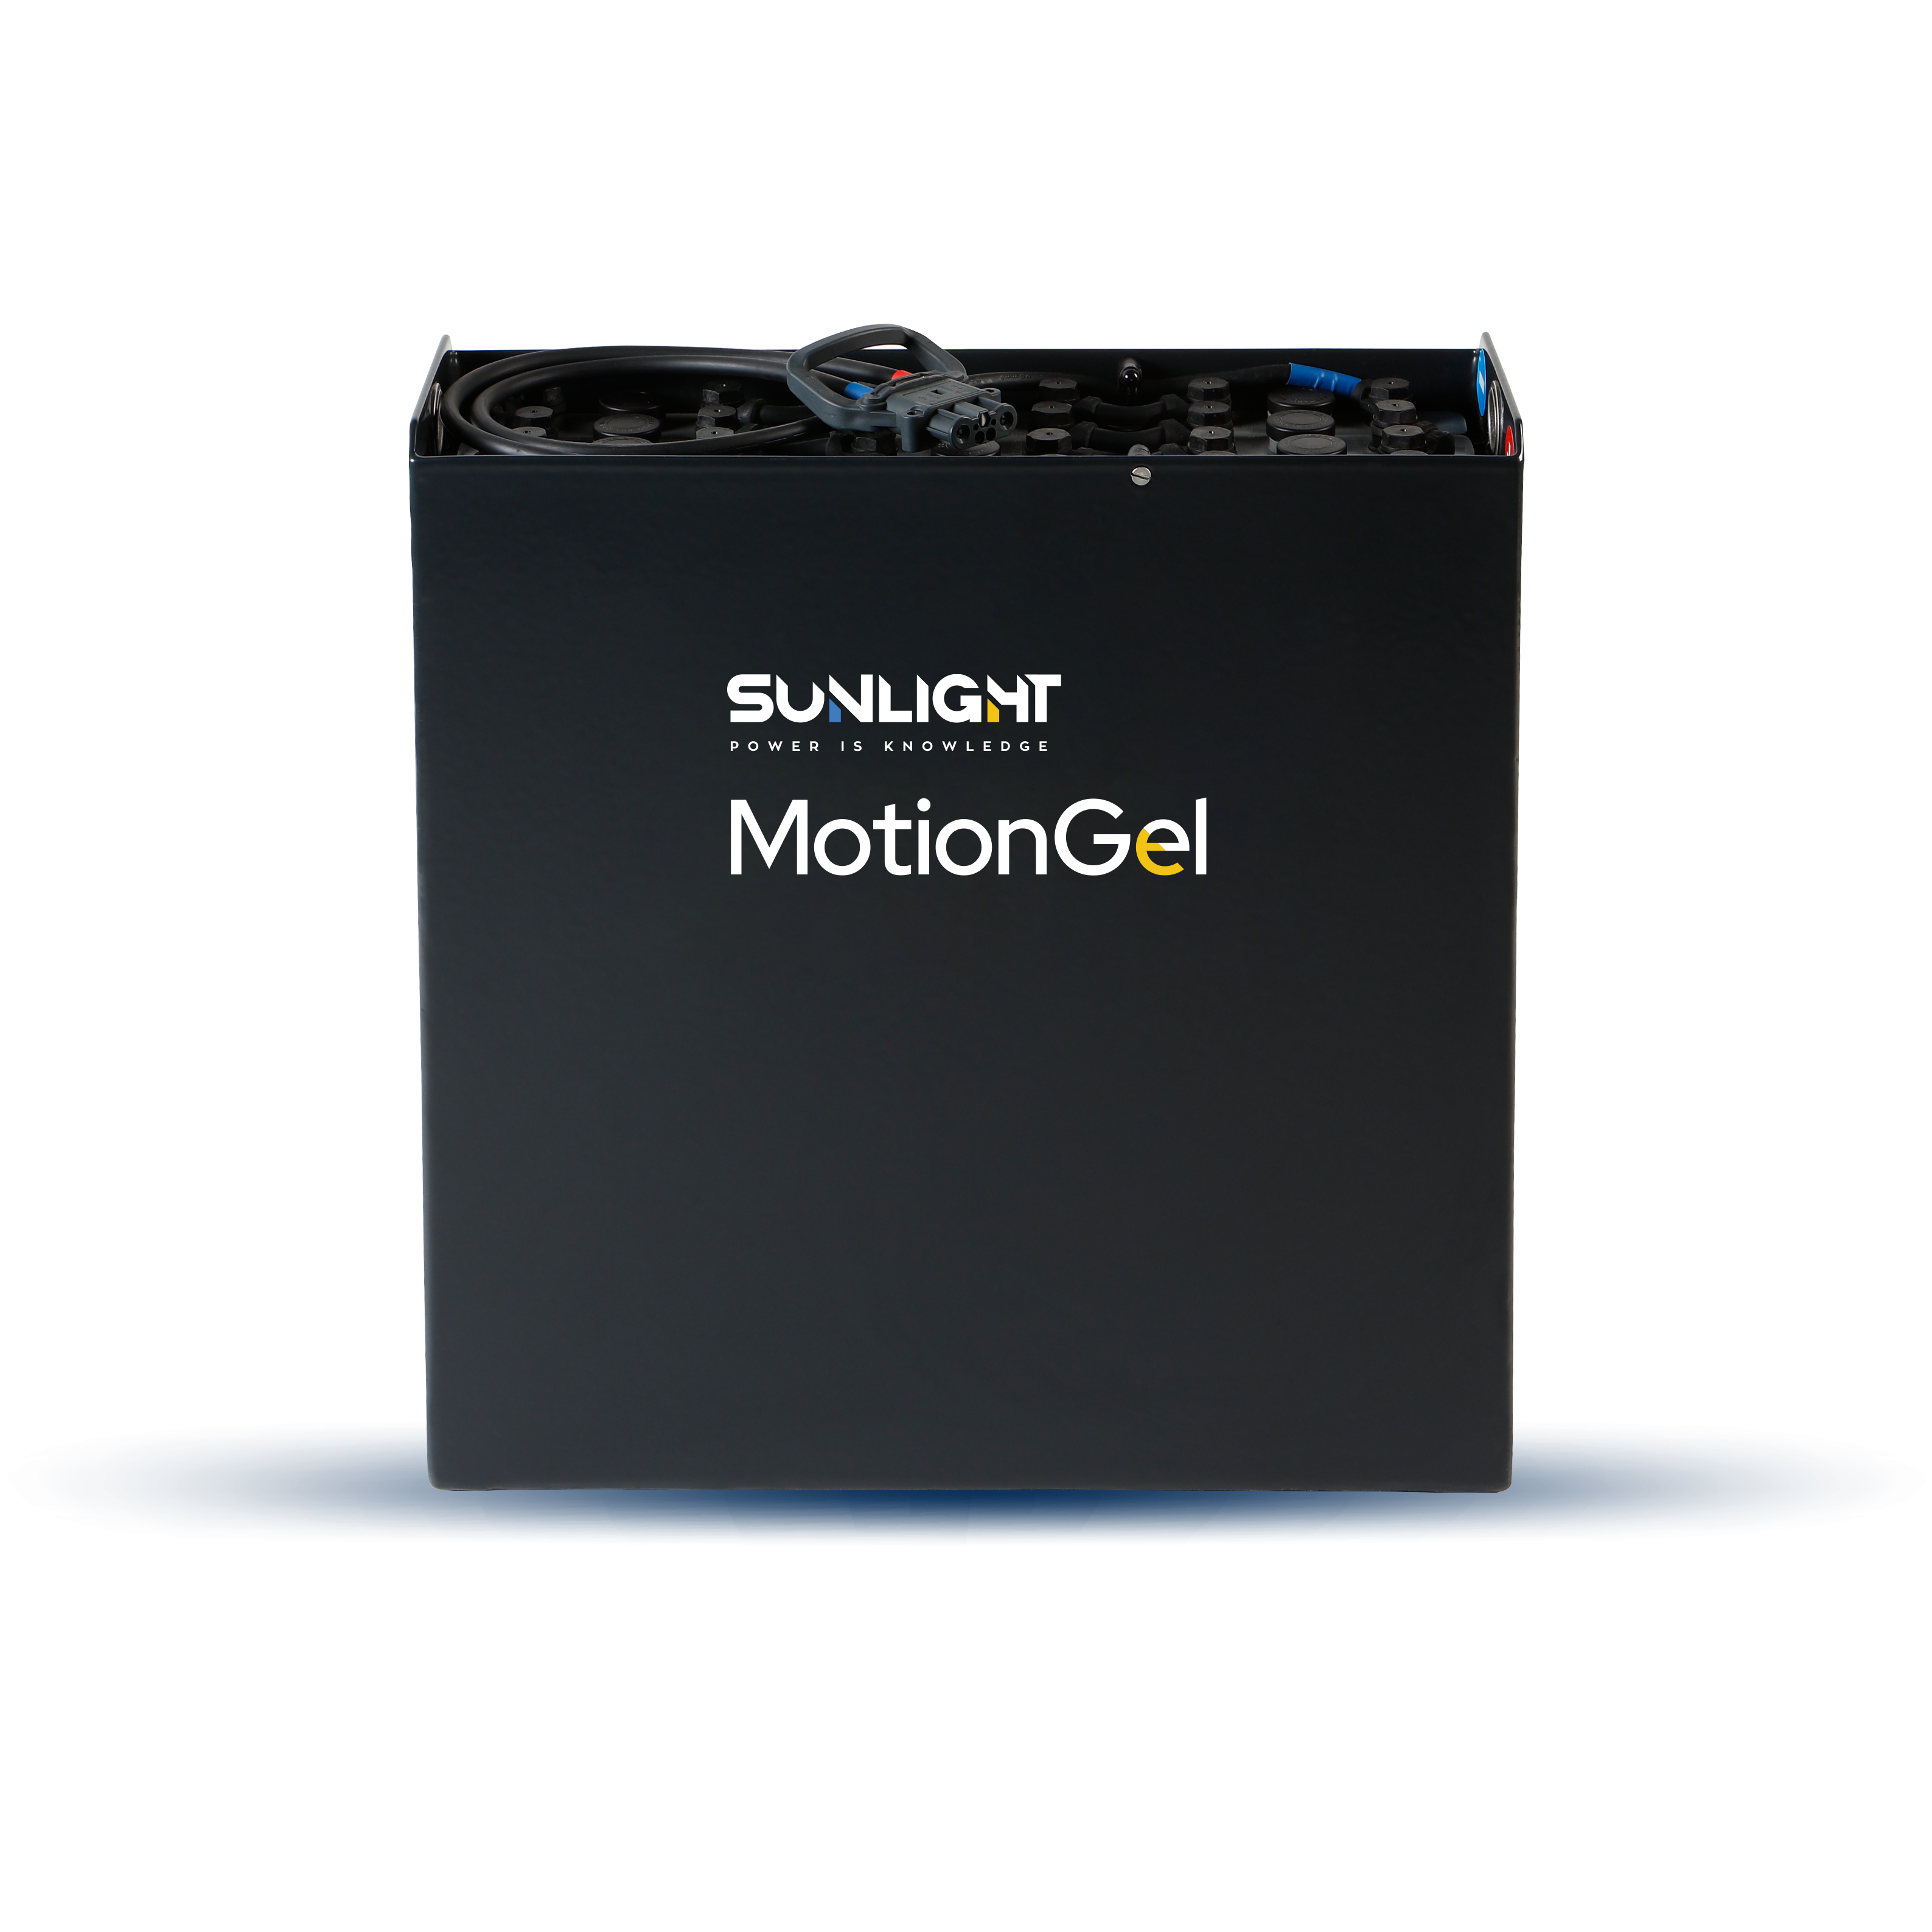 Sunlight MotionGel -  Lead-acid battery